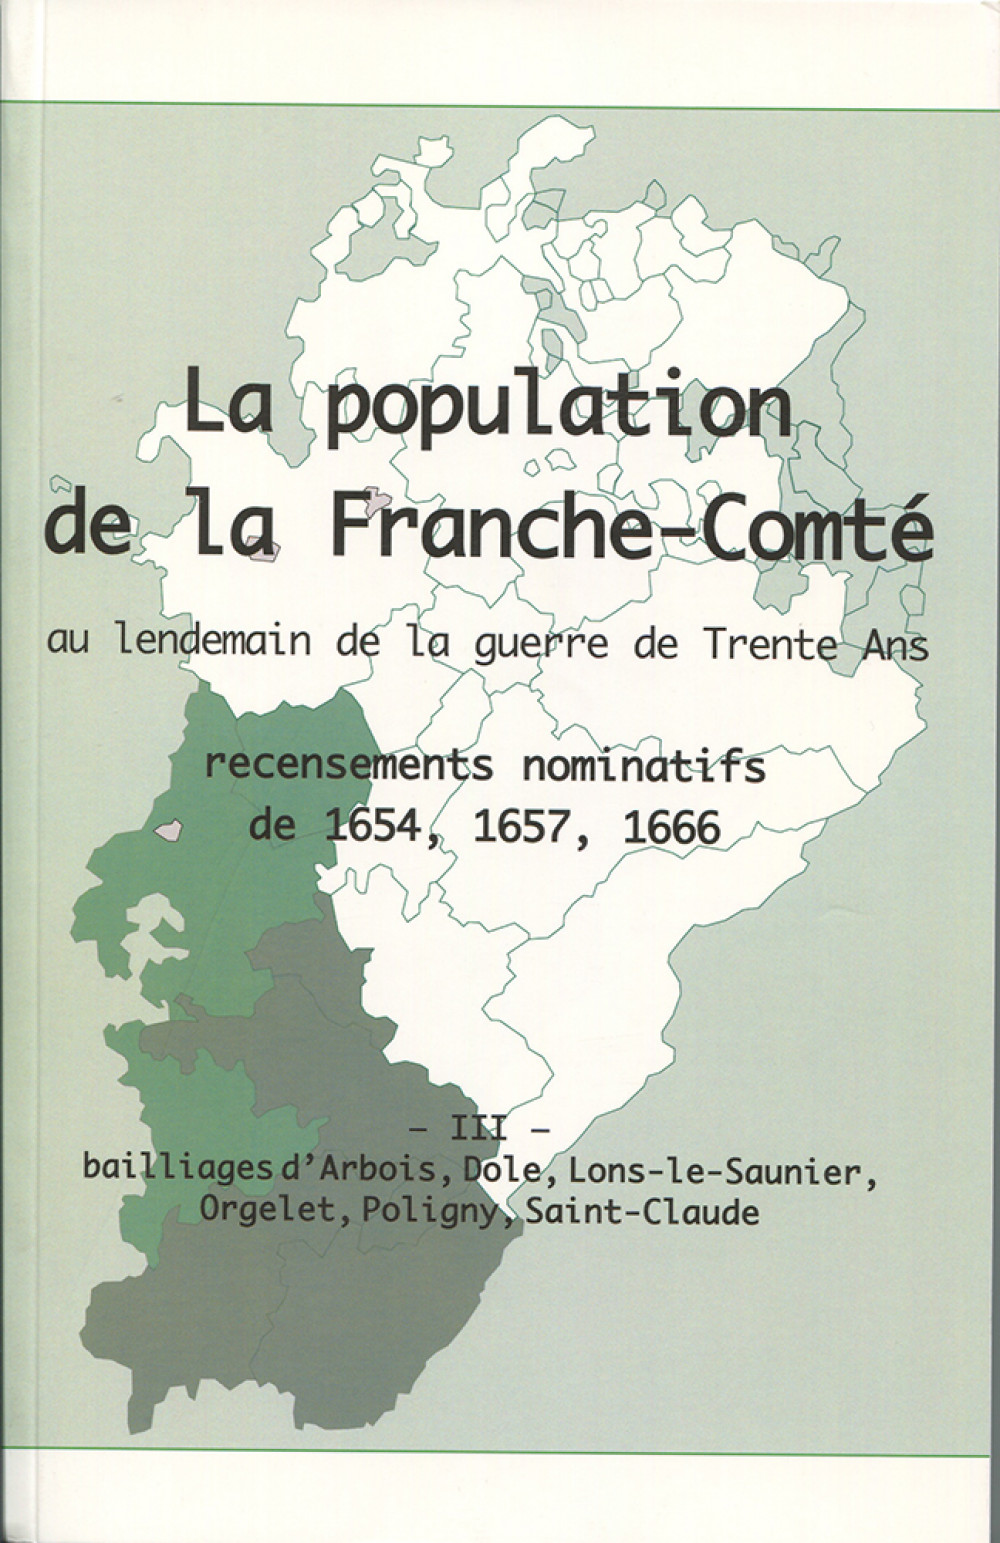 La population en Franche-Comté au lendemain de la guerre de Trente Ans. Tome III